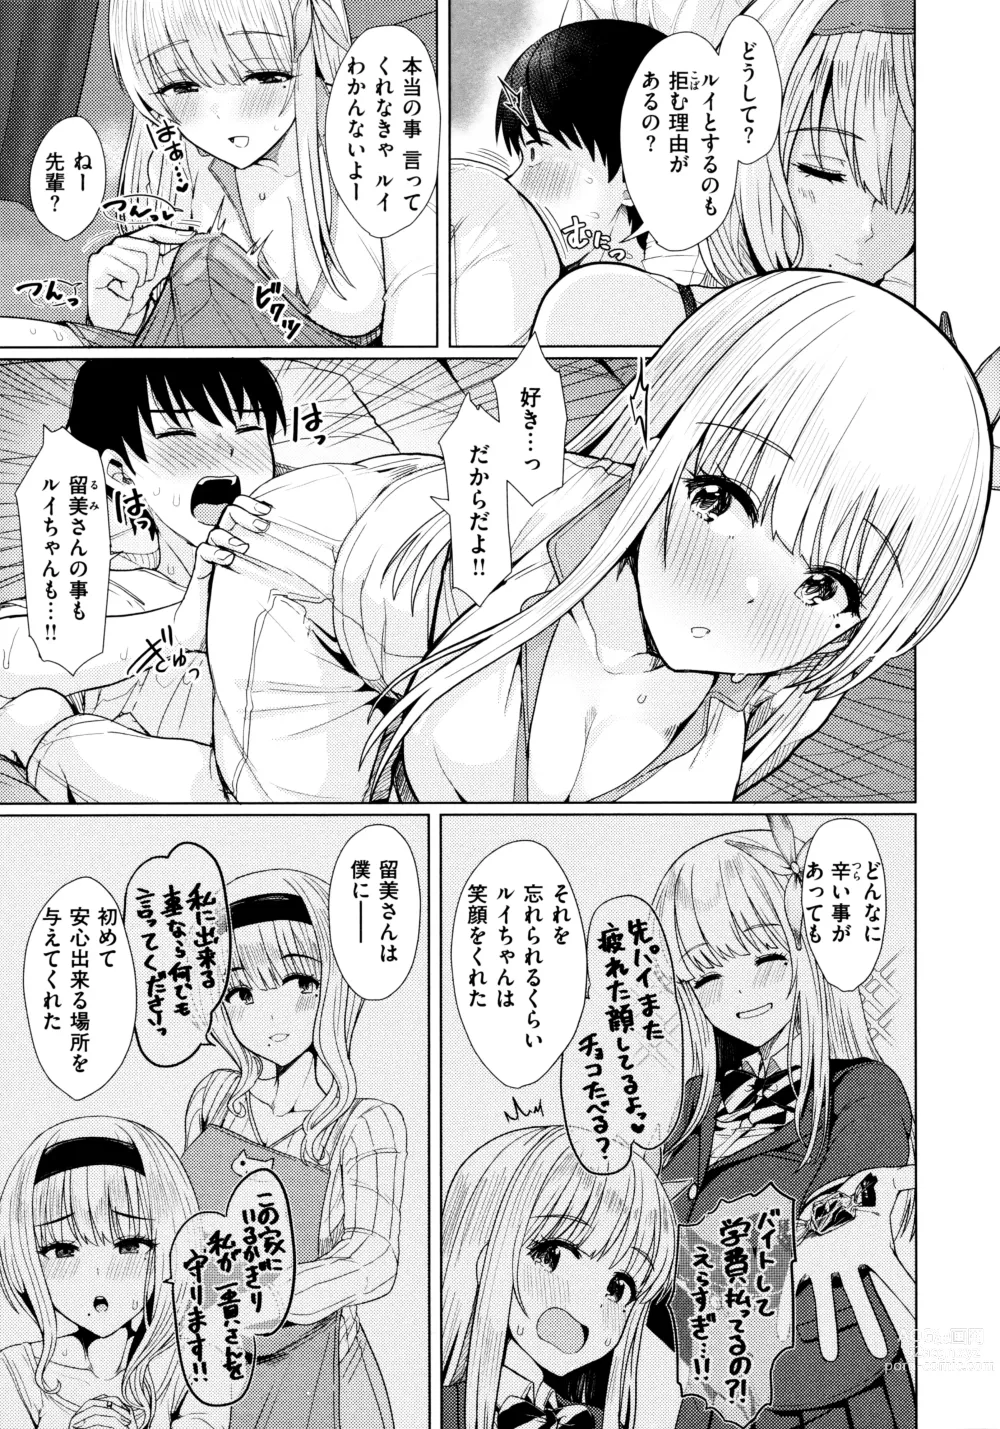 Page 11 of manga Nukunuku Seikatsu - Life Full of Sex + Melonbooks Kounyu Tokuten + Toranoana Kounyu Tokuten